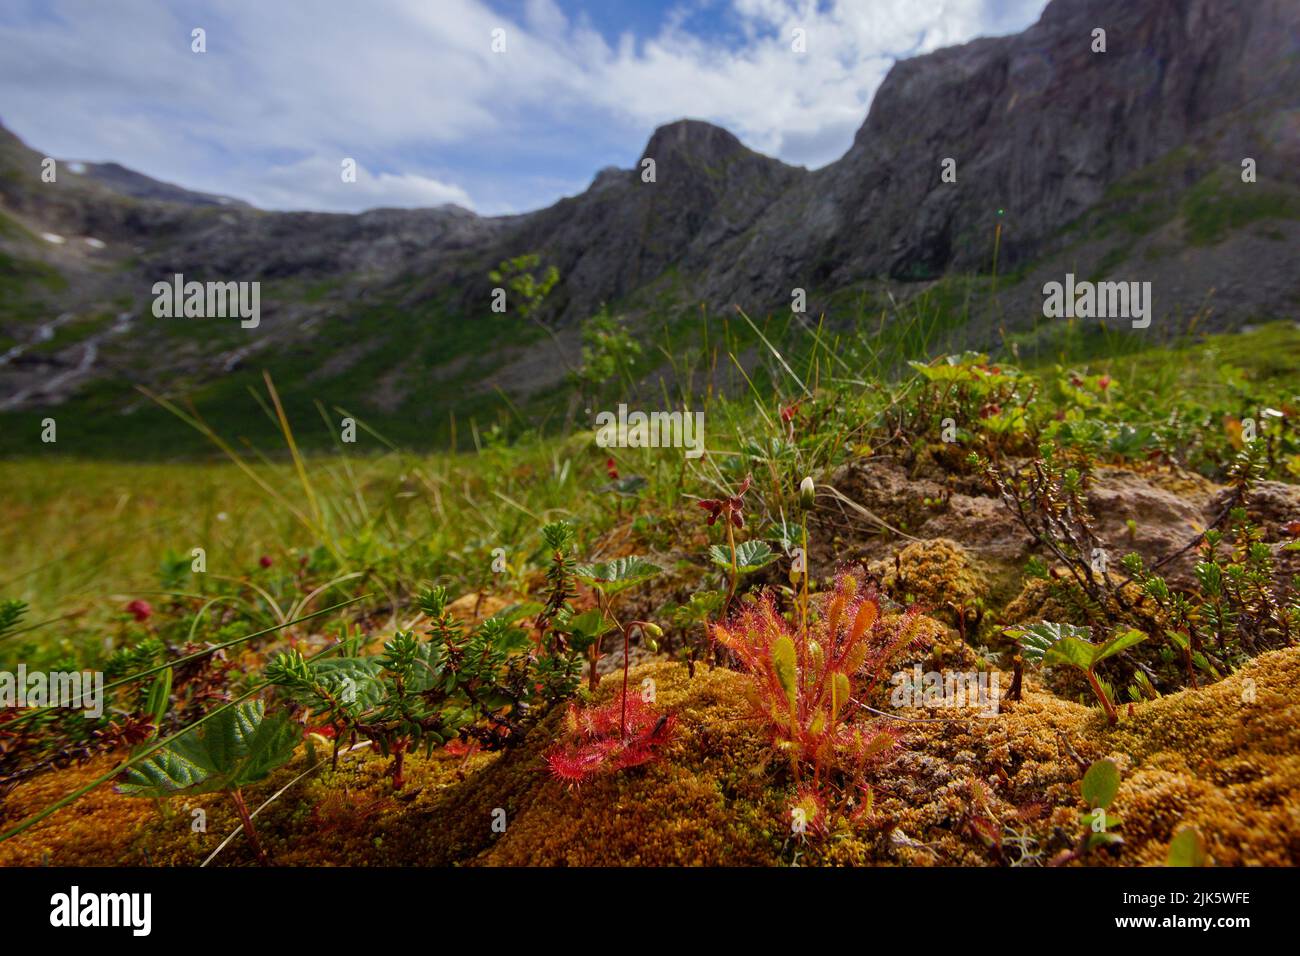 Le soda anglais (Drosera anglica) et le soda à feuilles rondes (Drosera rotundifolia) devant les montagnes, au nord de la Norvège Banque D'Images